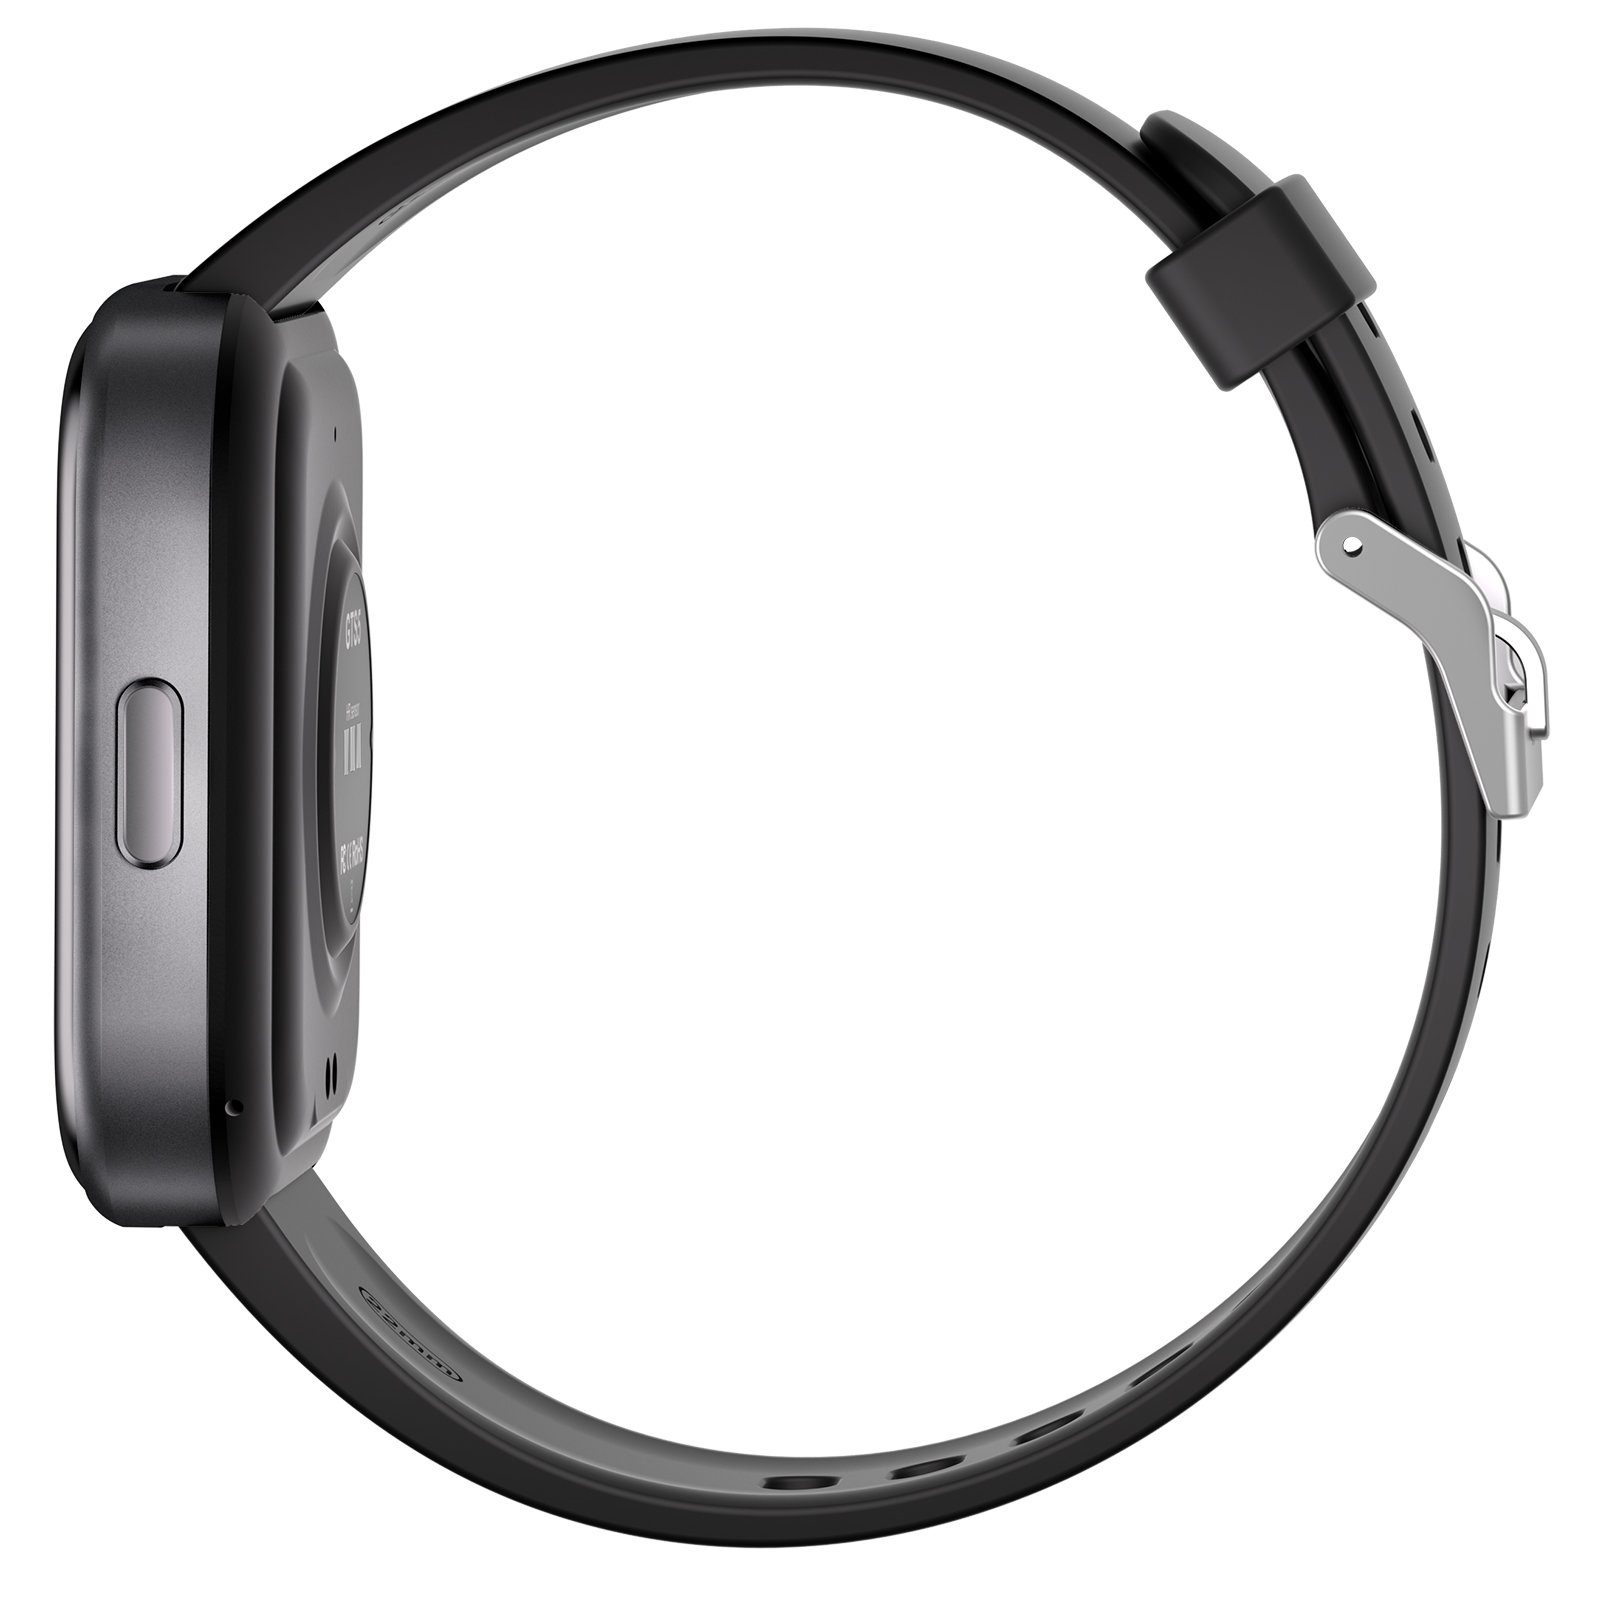 FELIXLEO Smartwatch-Armband Wasserdichte Uhr,IP68 GTS6 Smartwatch mit Telefonfunktion,2.0"